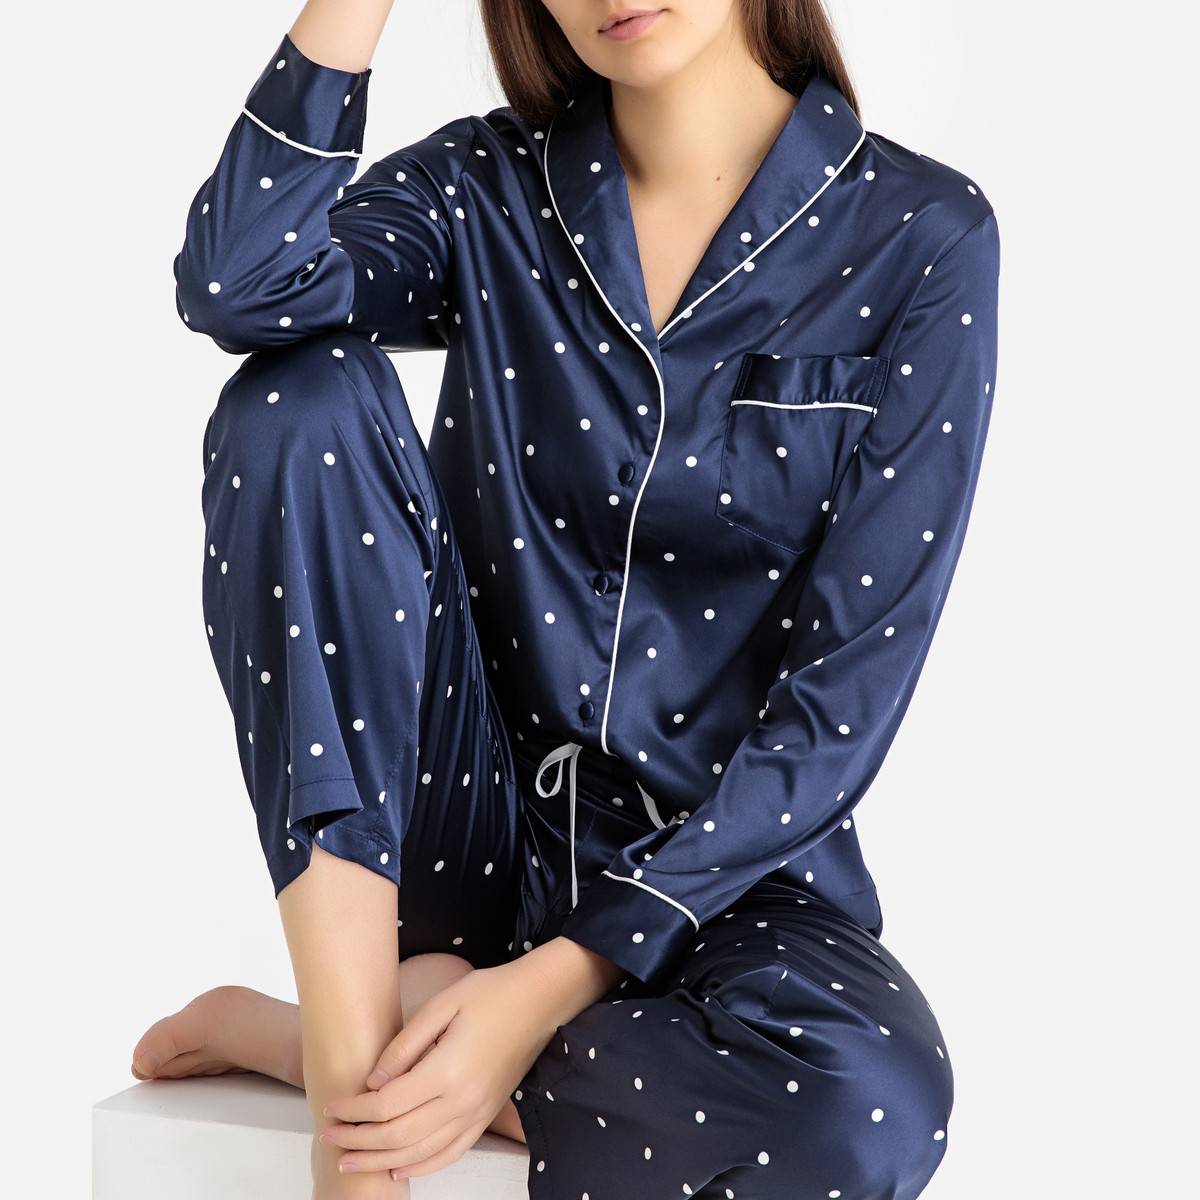 Продажа пижам. La Redoute пижама. Женская пижама ля редут синяя. Жена в пижаме. Модные пижамы.